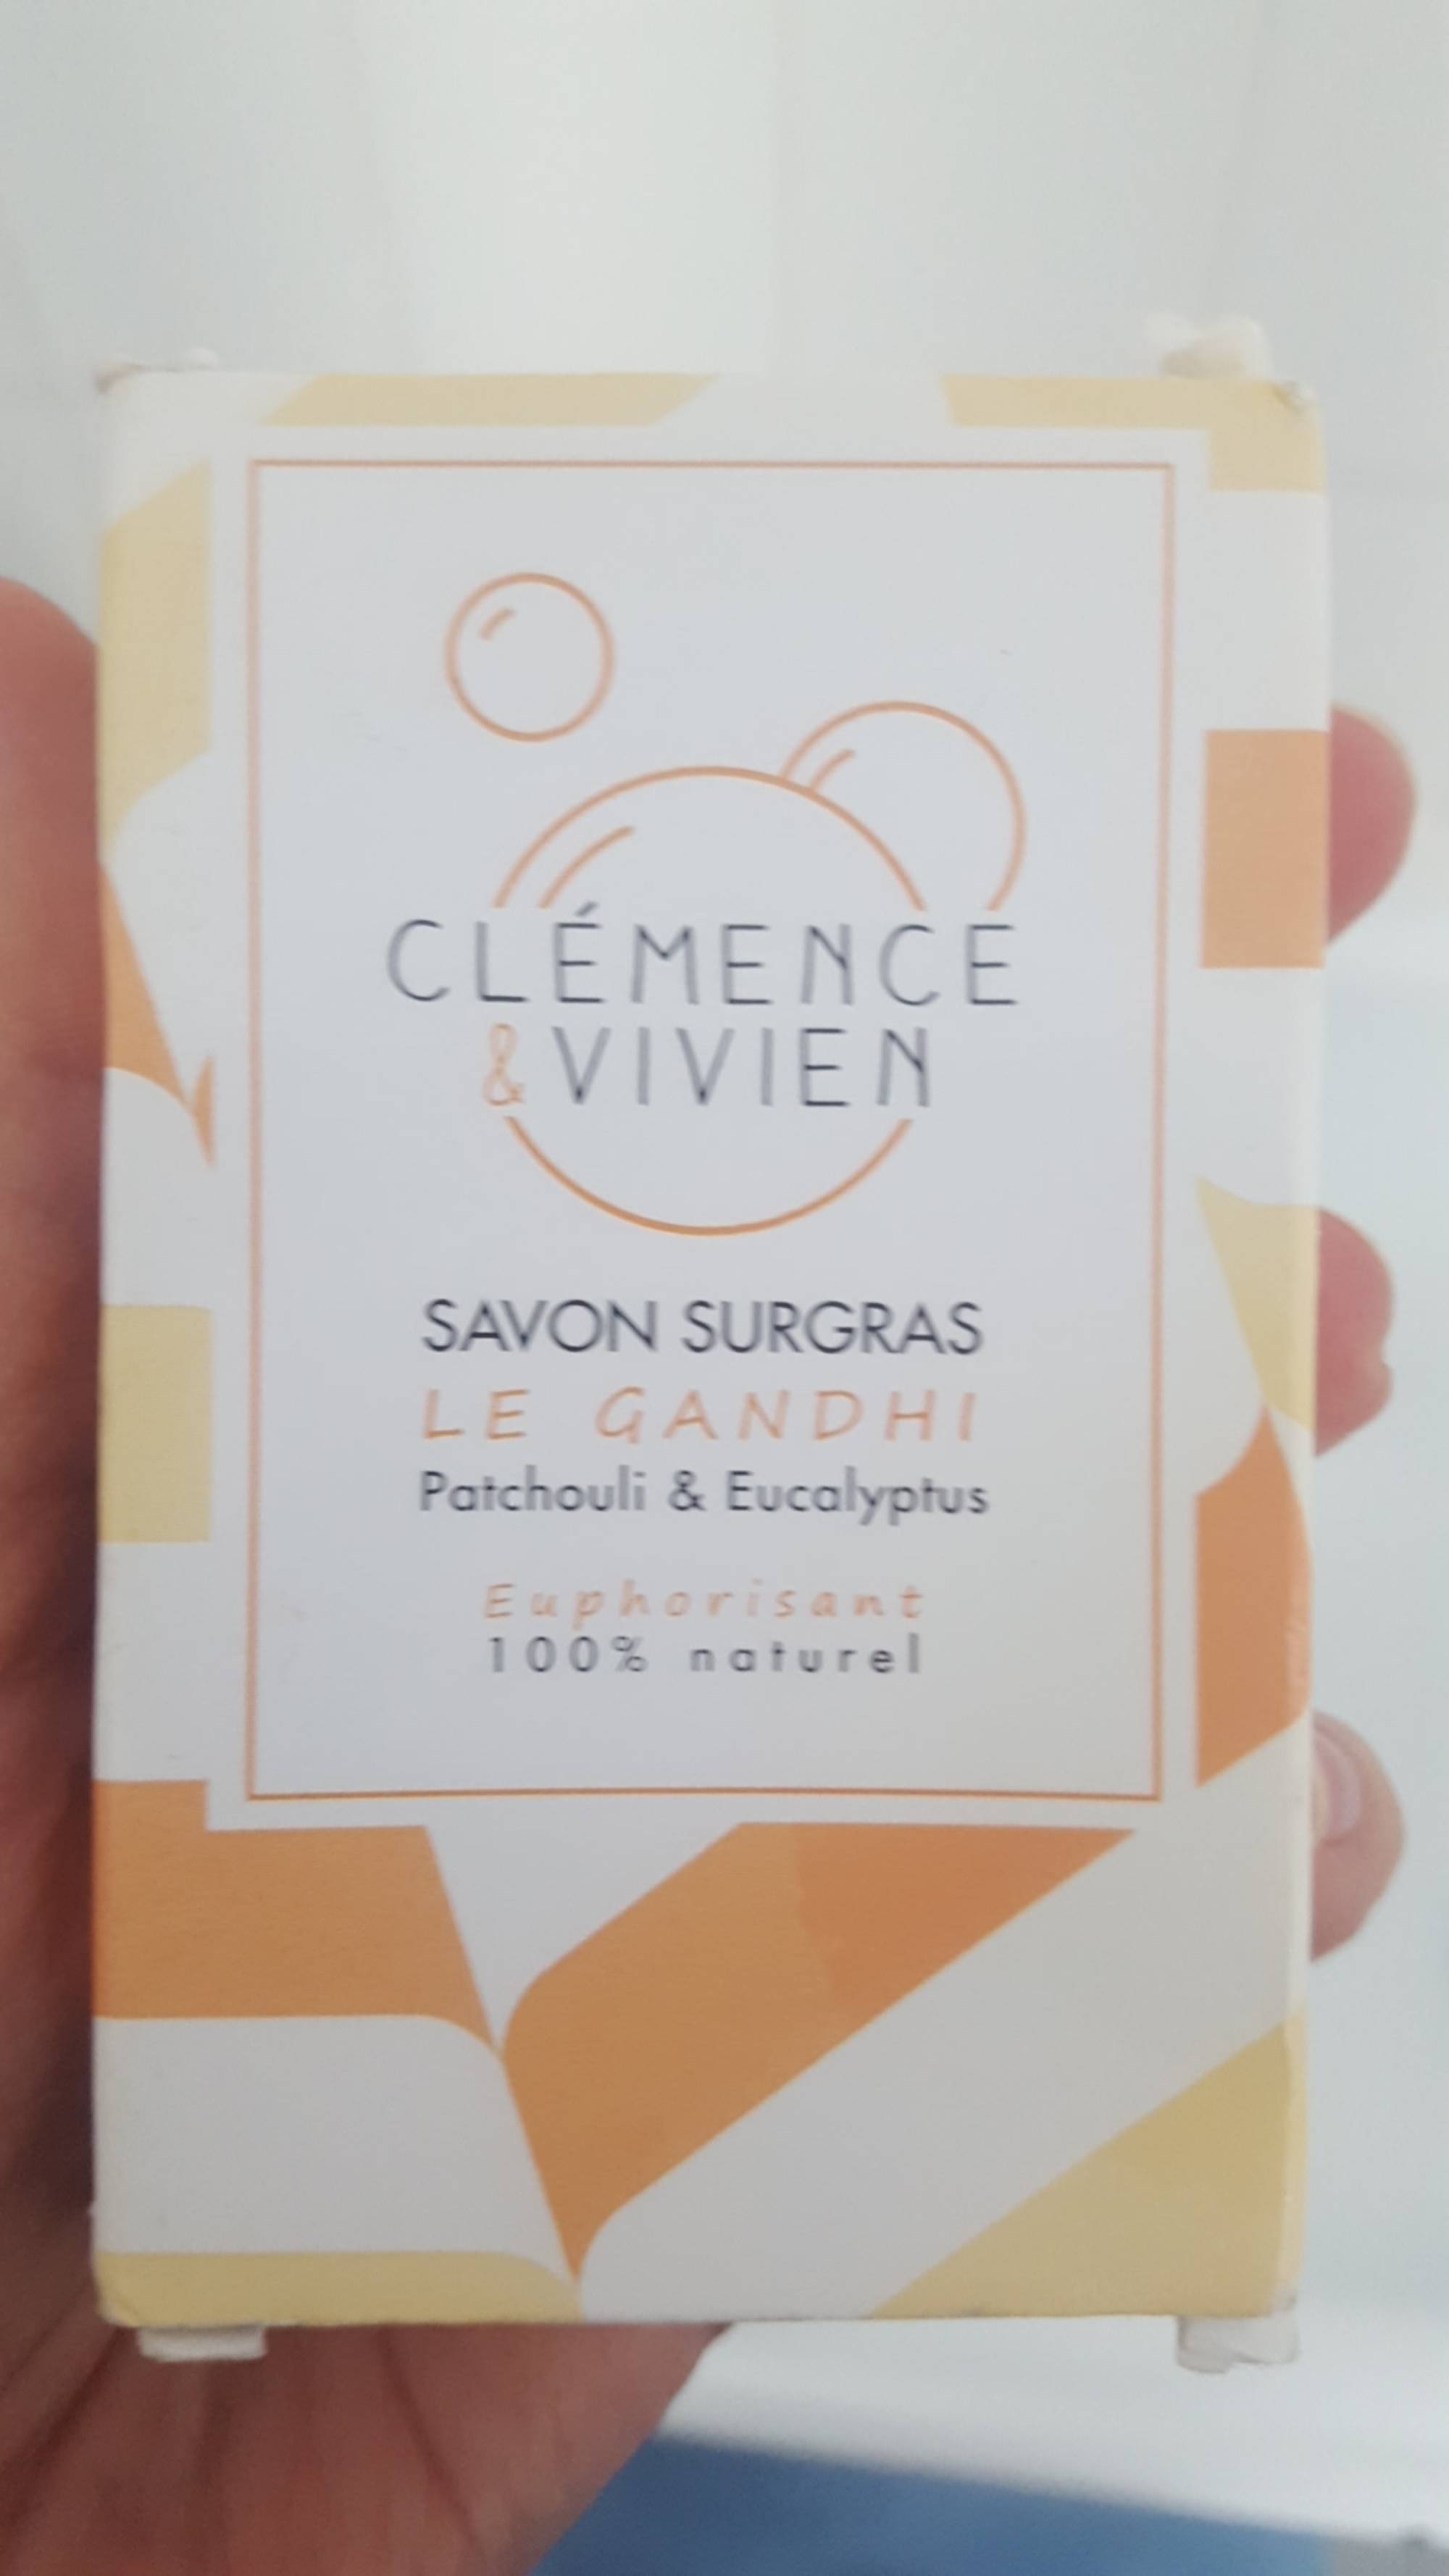 CLÉMENCE & VIVIEN - Le gandhi - Savon surgras